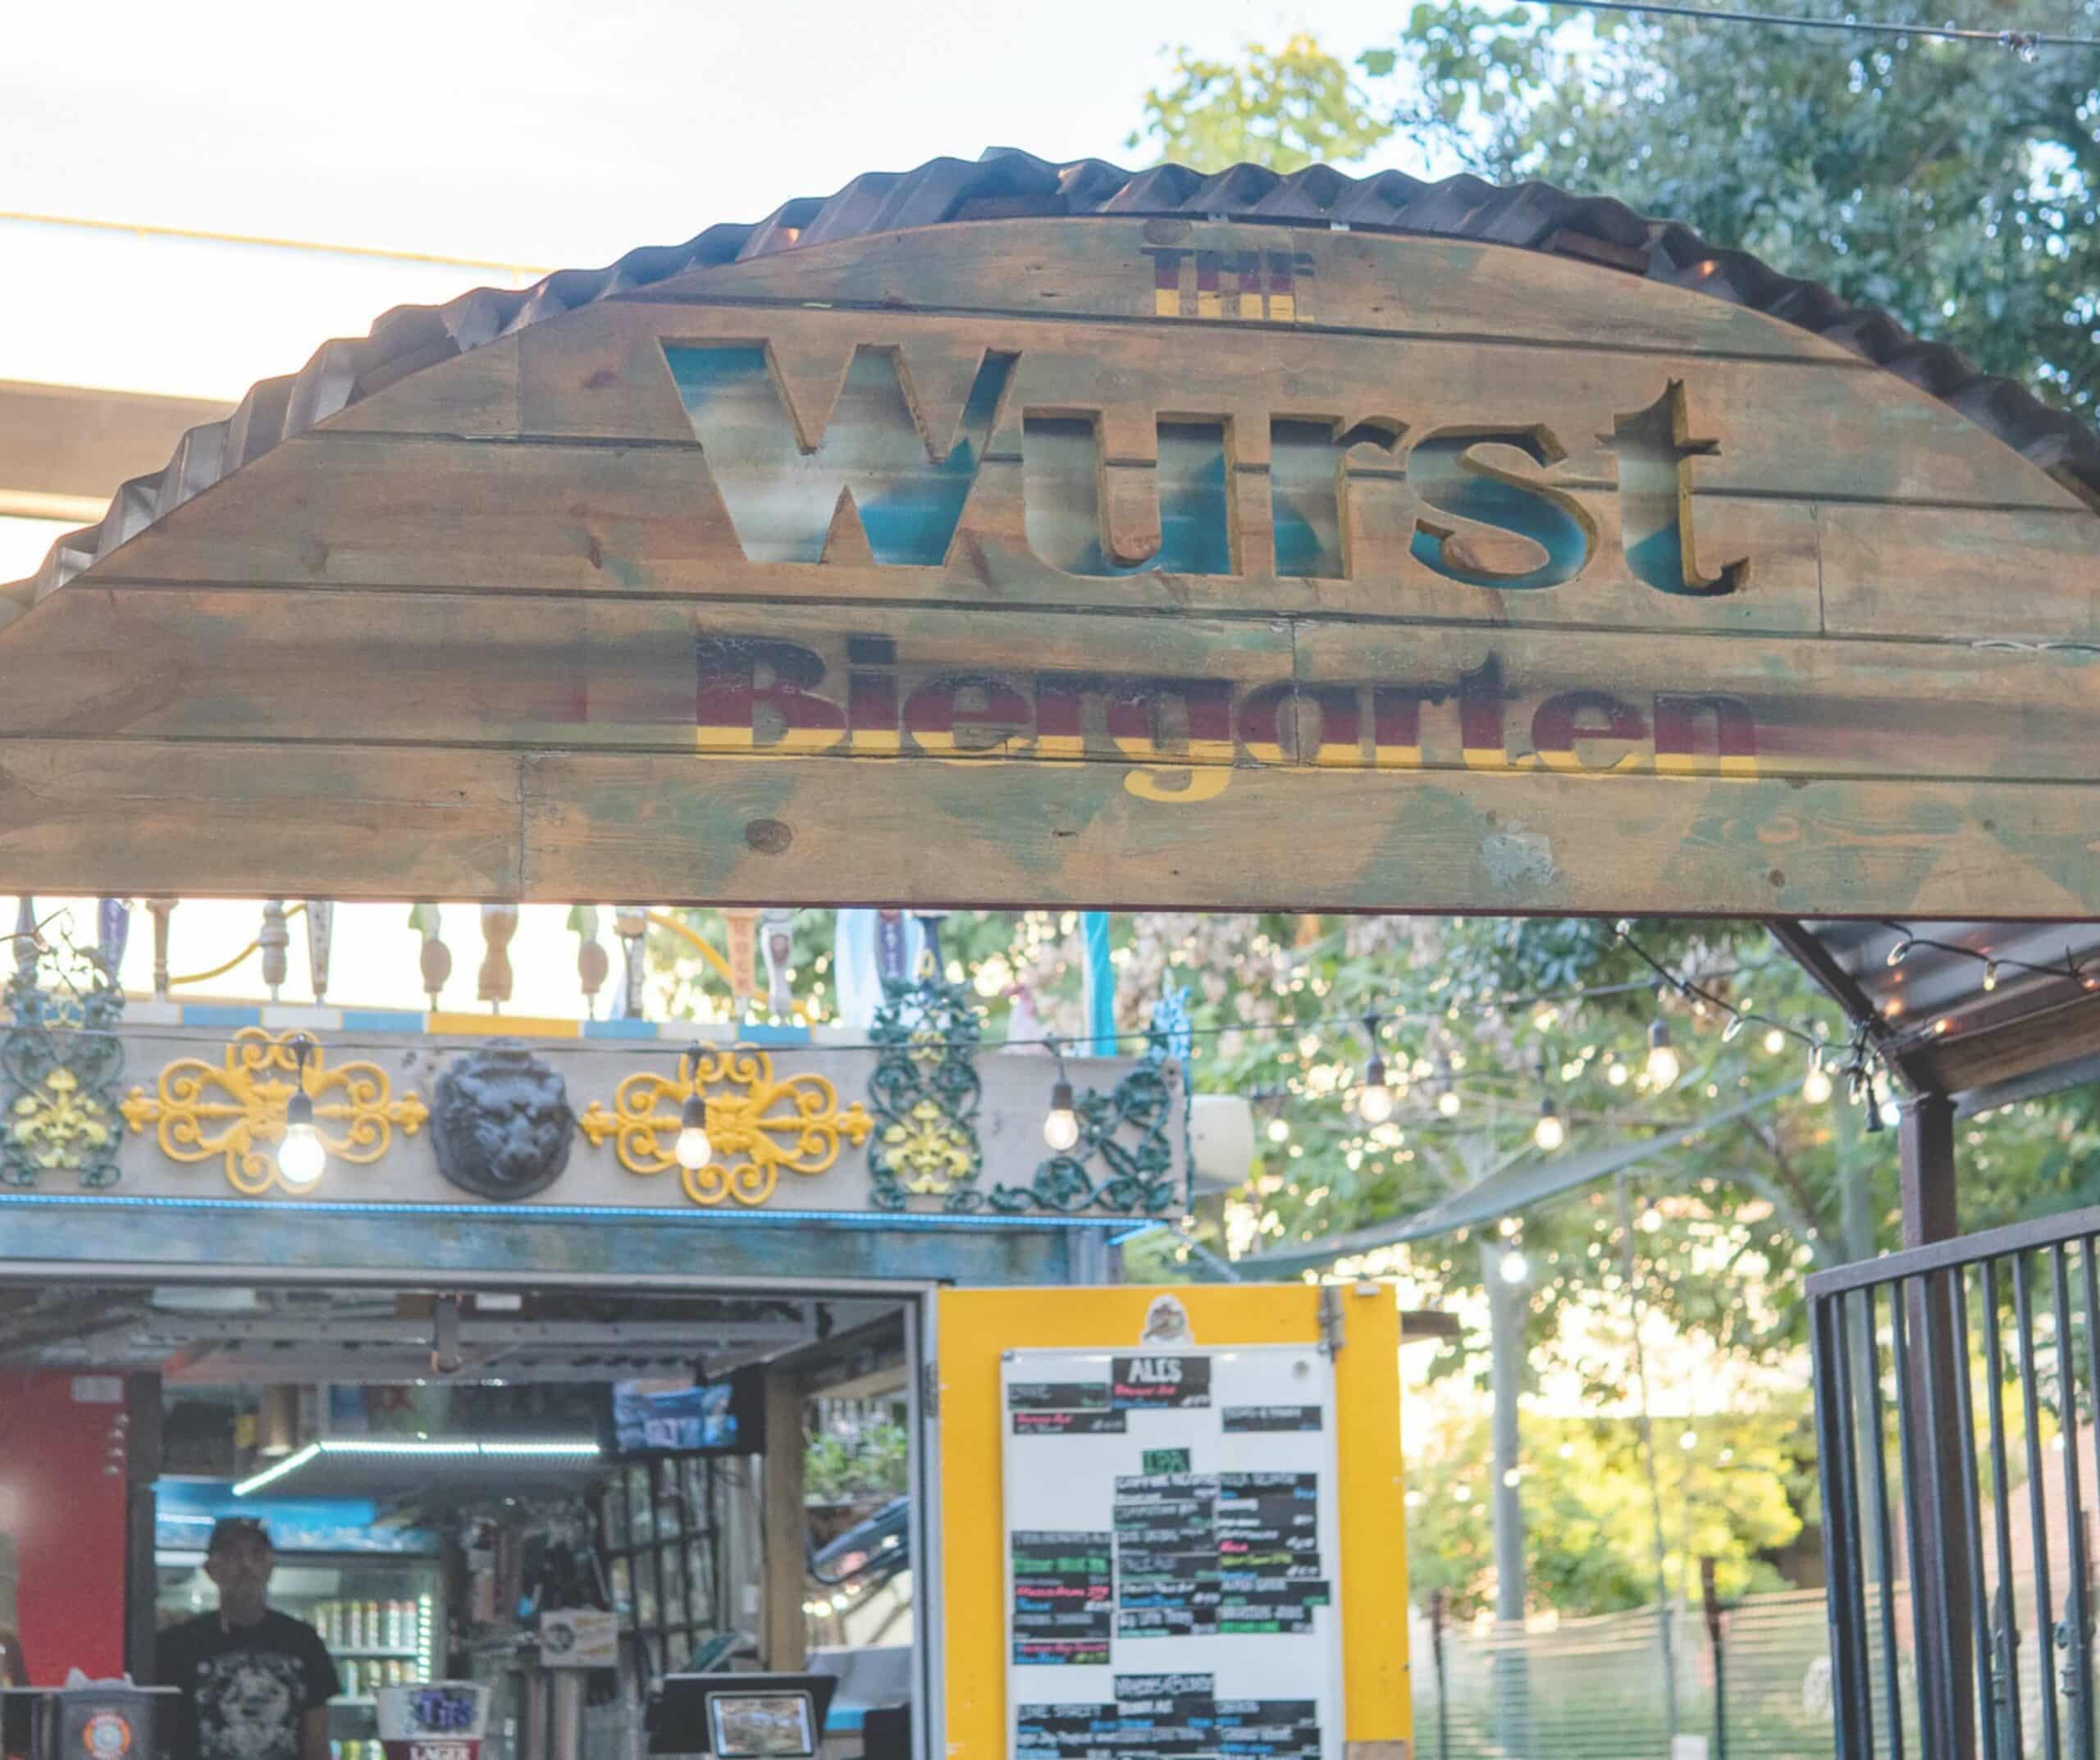 Wurst Beer Garden